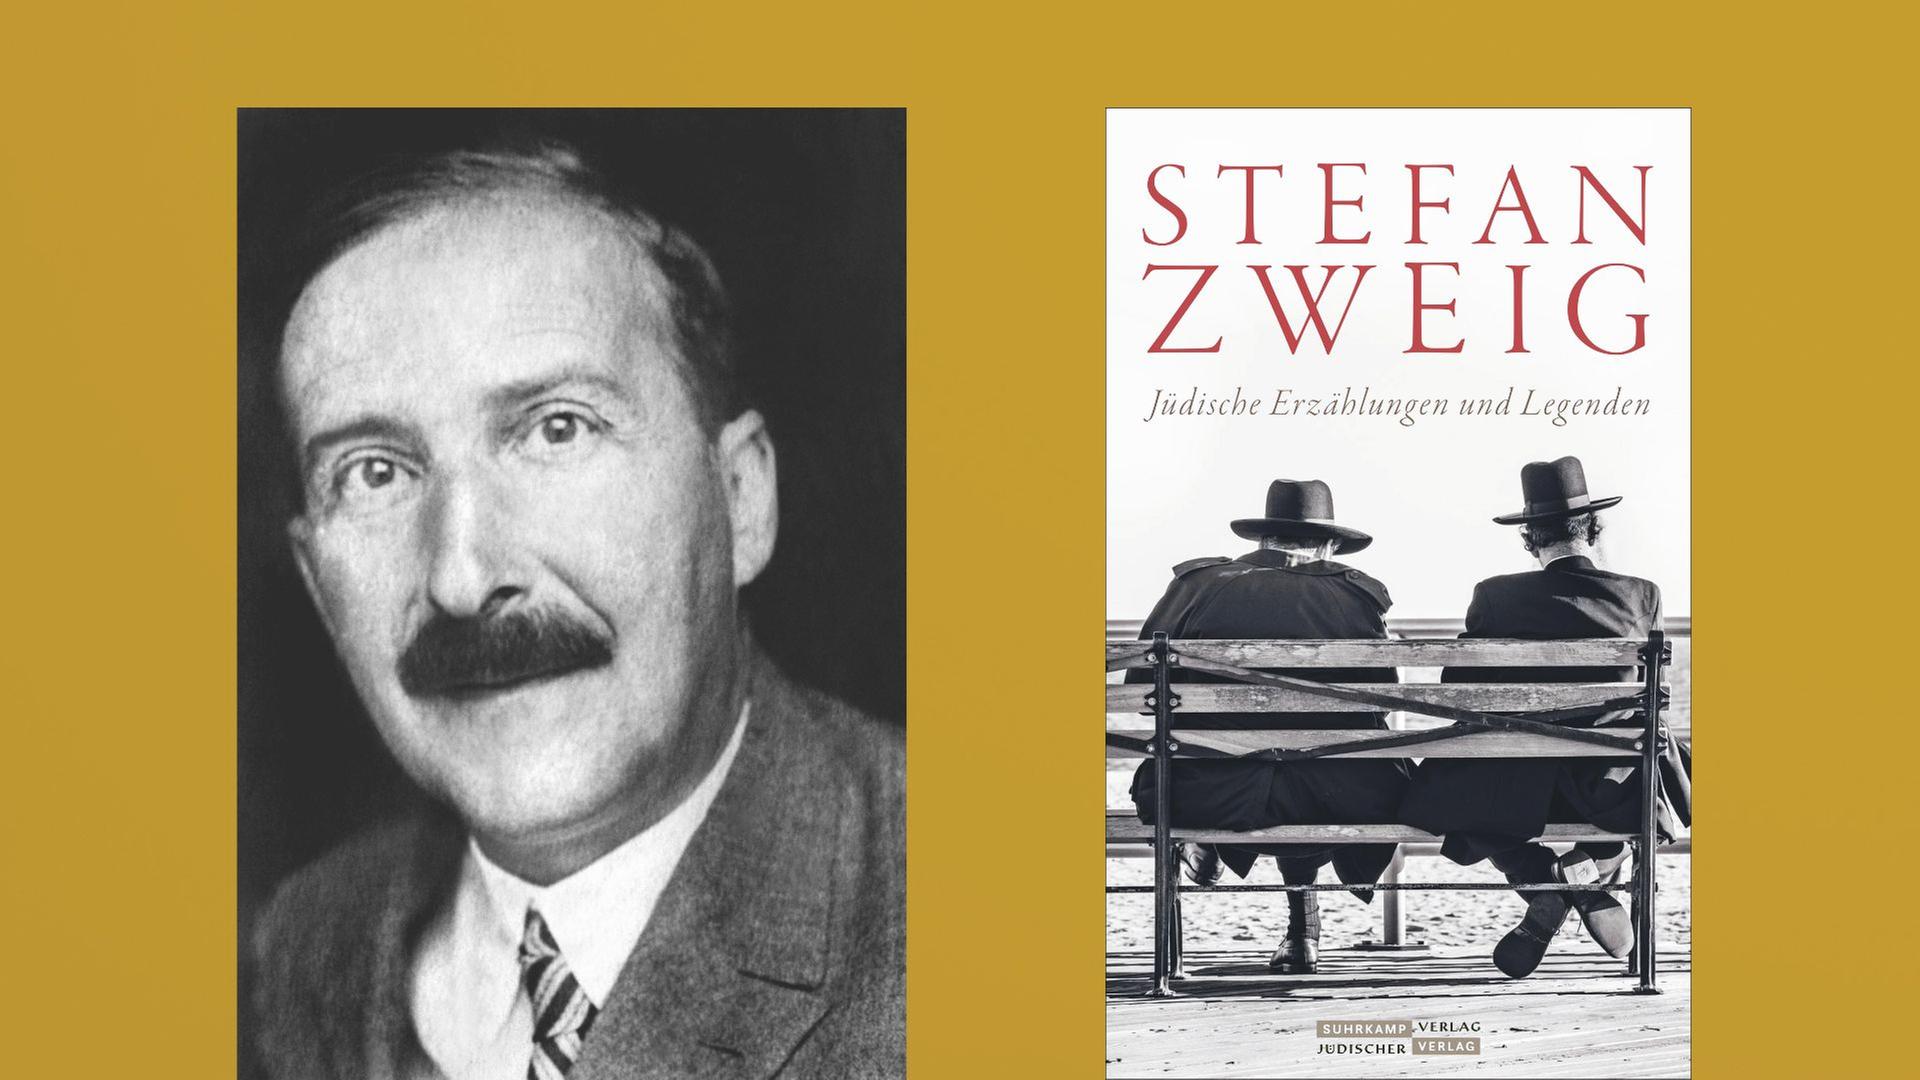 Stefan Zweig: "Jüdische Erzählungenund Legenden"

Zu sehen sind der Autor und das Buchcover